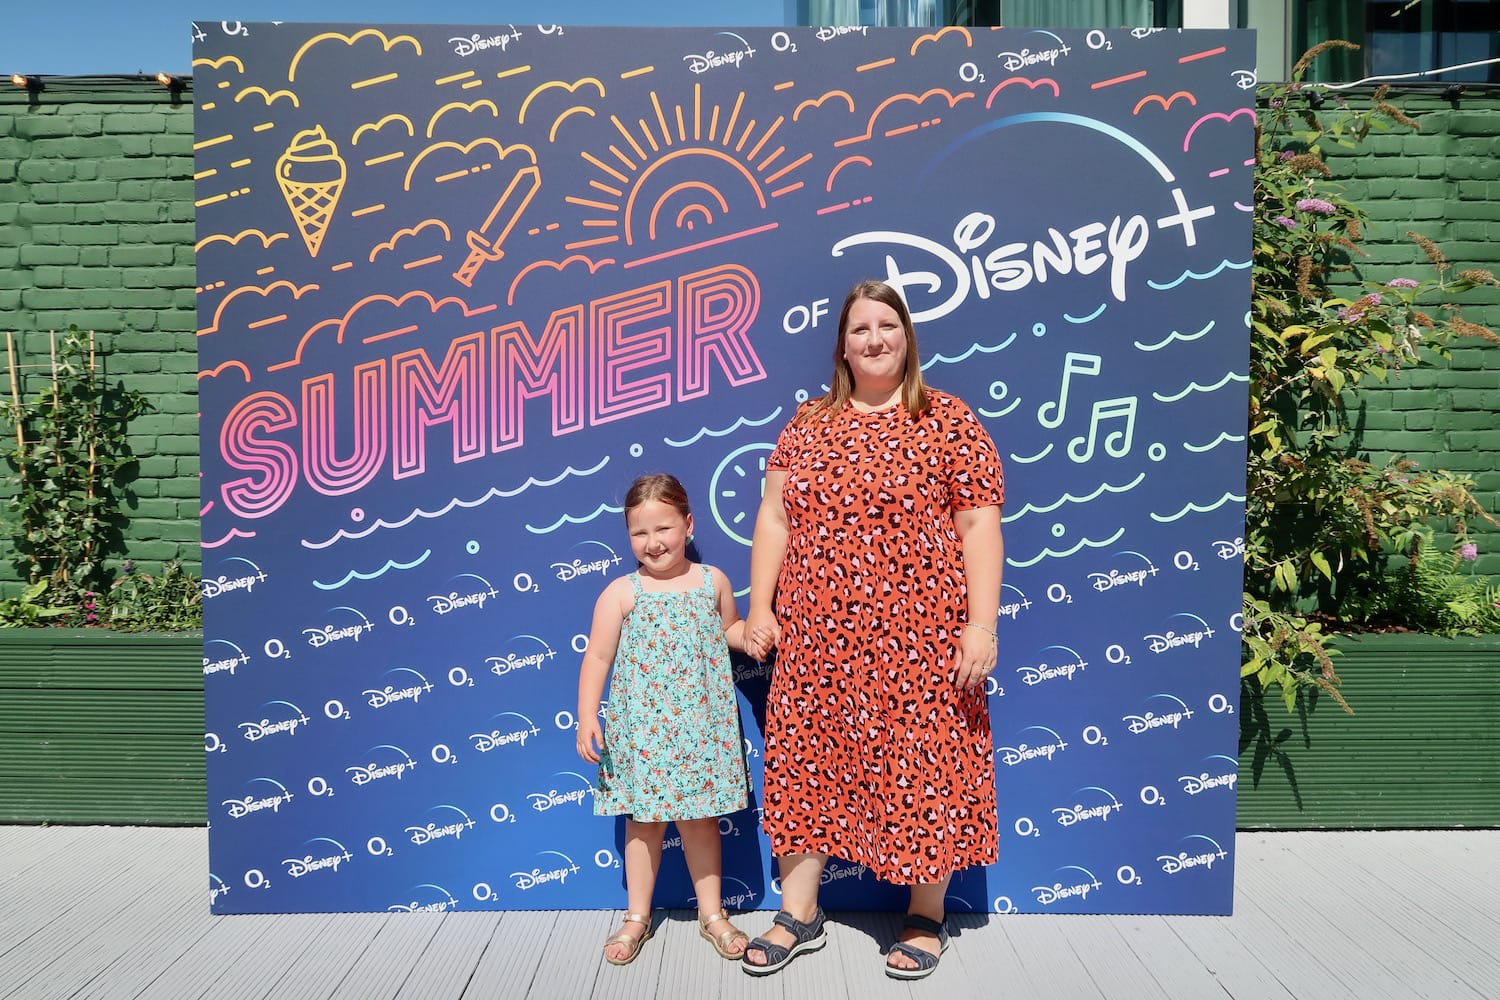 summer of Disney Plus event